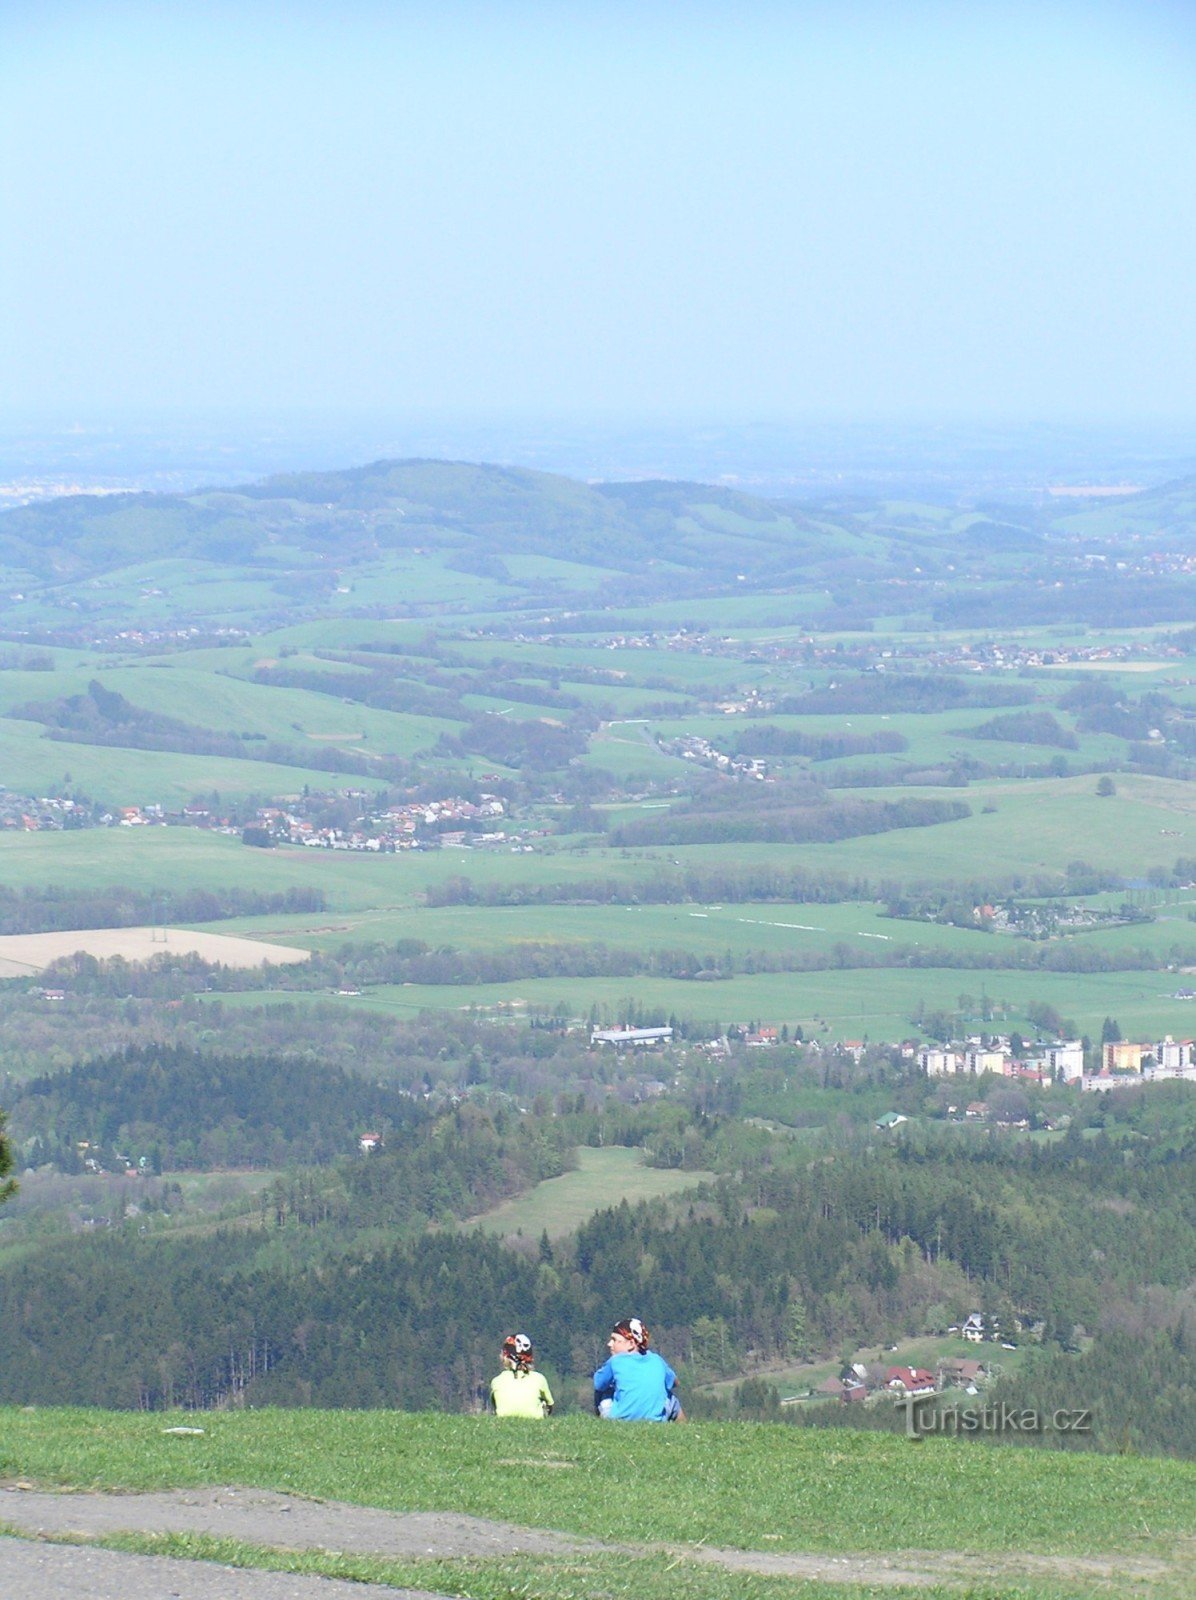 View of Frenštát, Tichou, Kozlovice